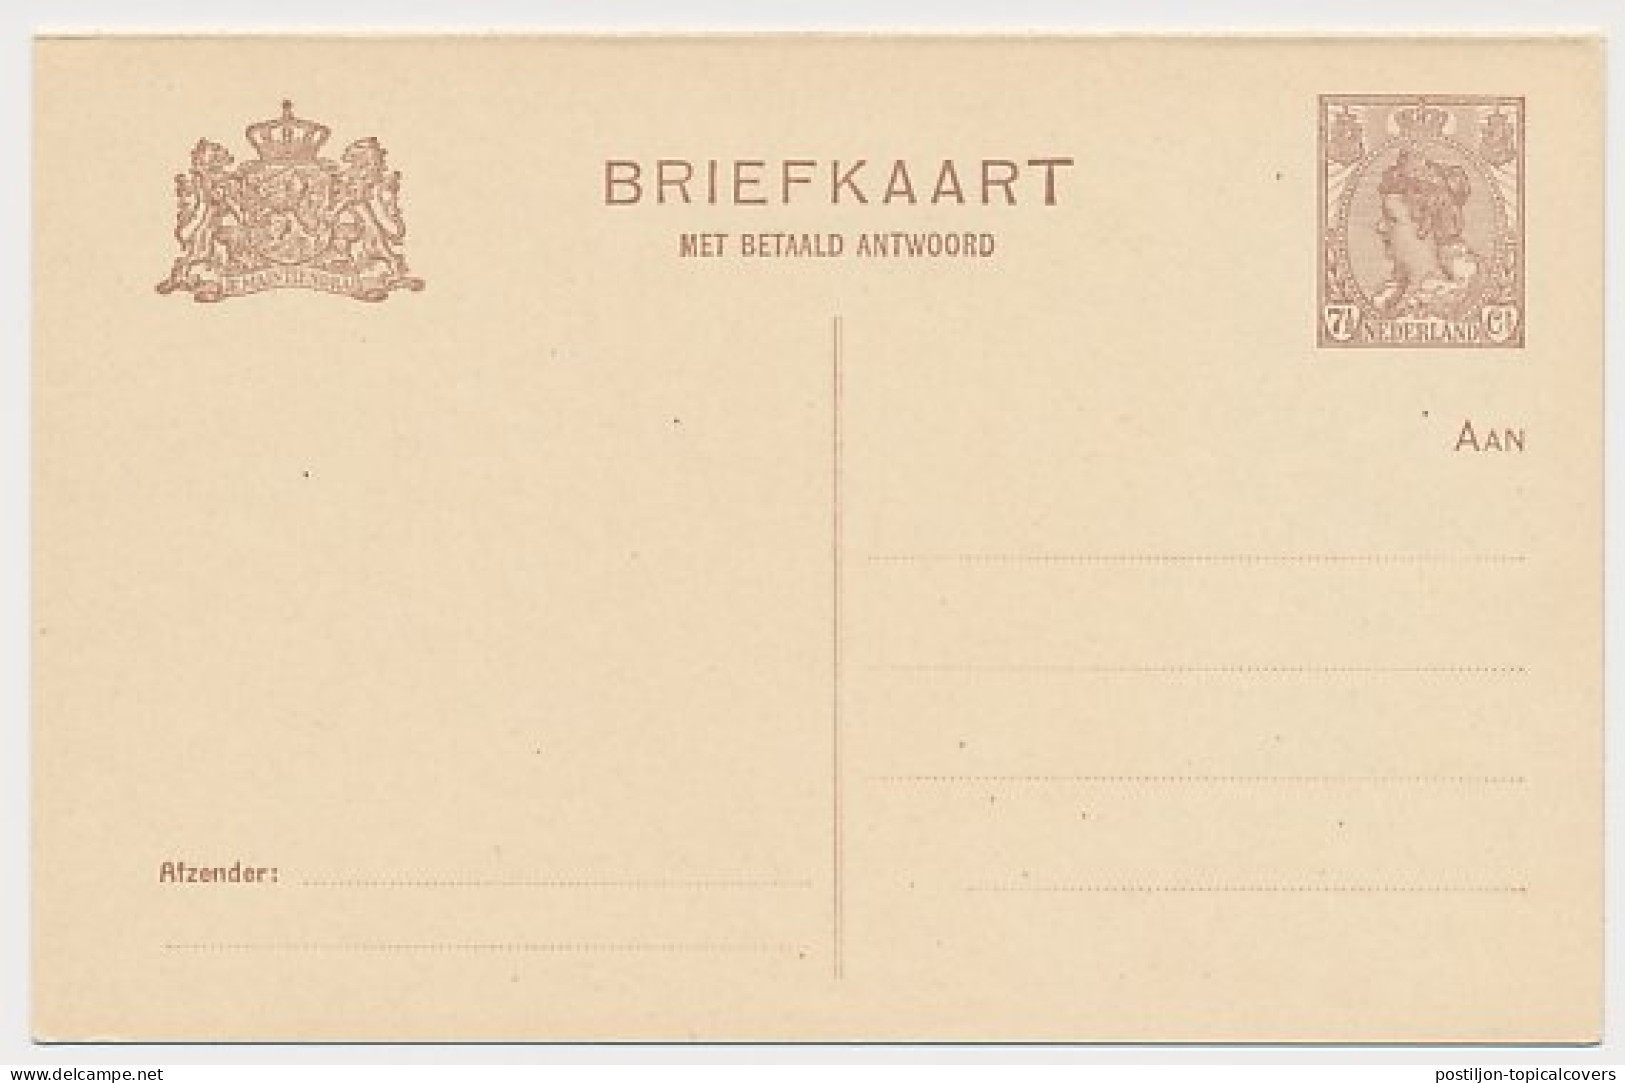 Briefkaart G. 123 I - Entiers Postaux